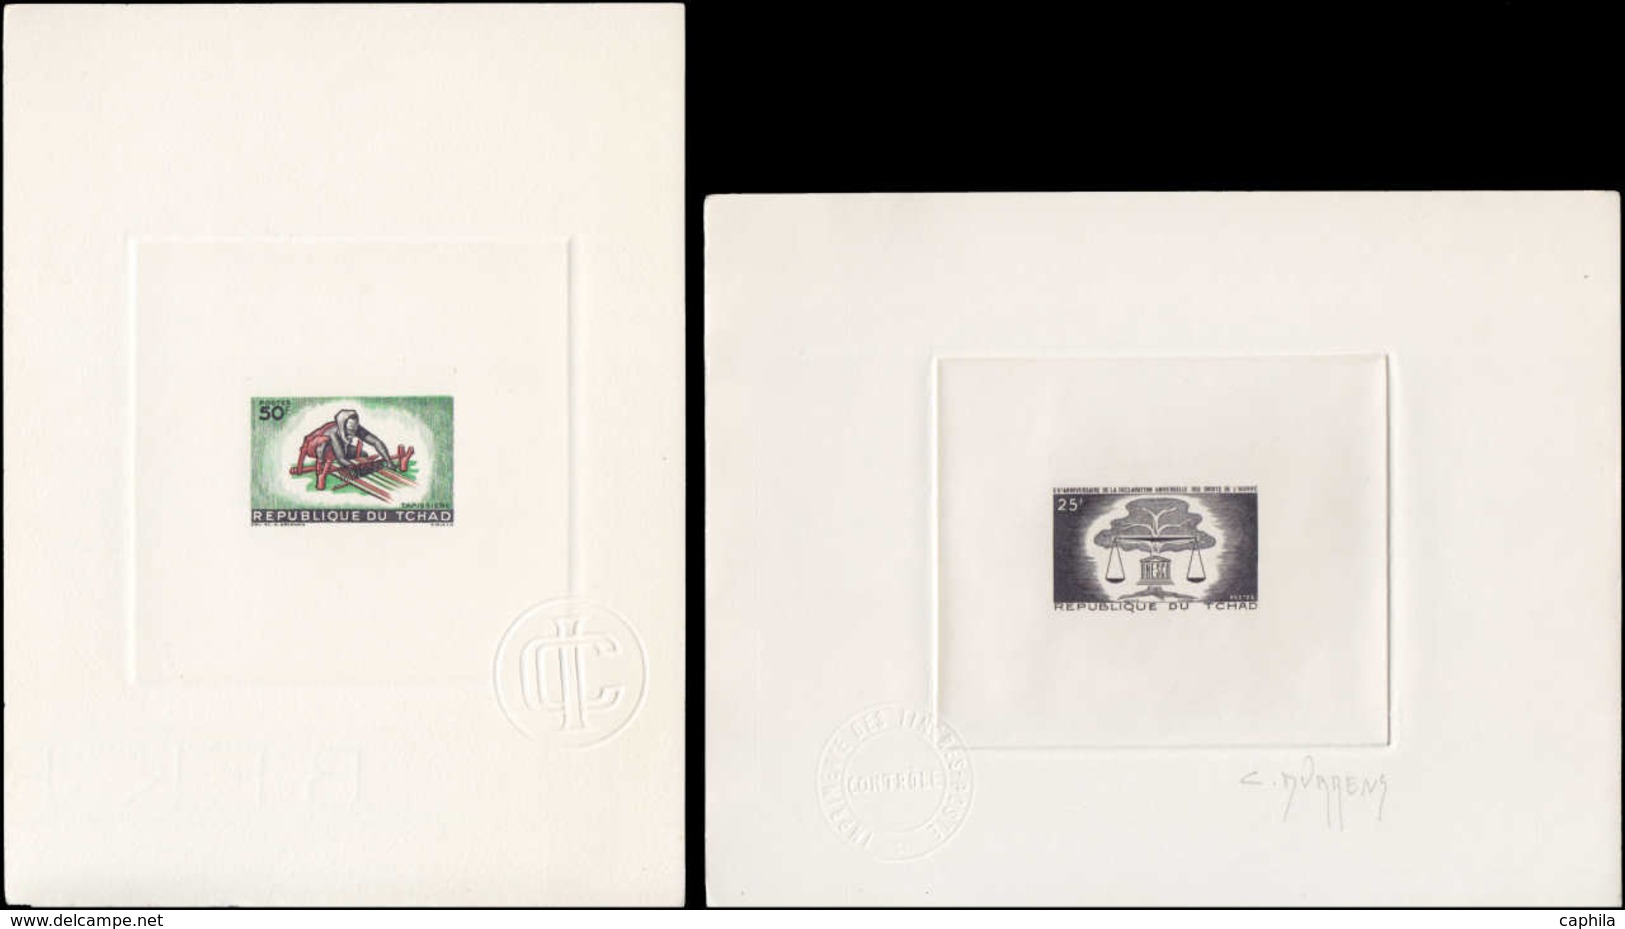 EPA TCHAD - Epreuves d'Artiste - Collection de 27 épreuves d'artiste signées, toutes différentes, période 1959/1970